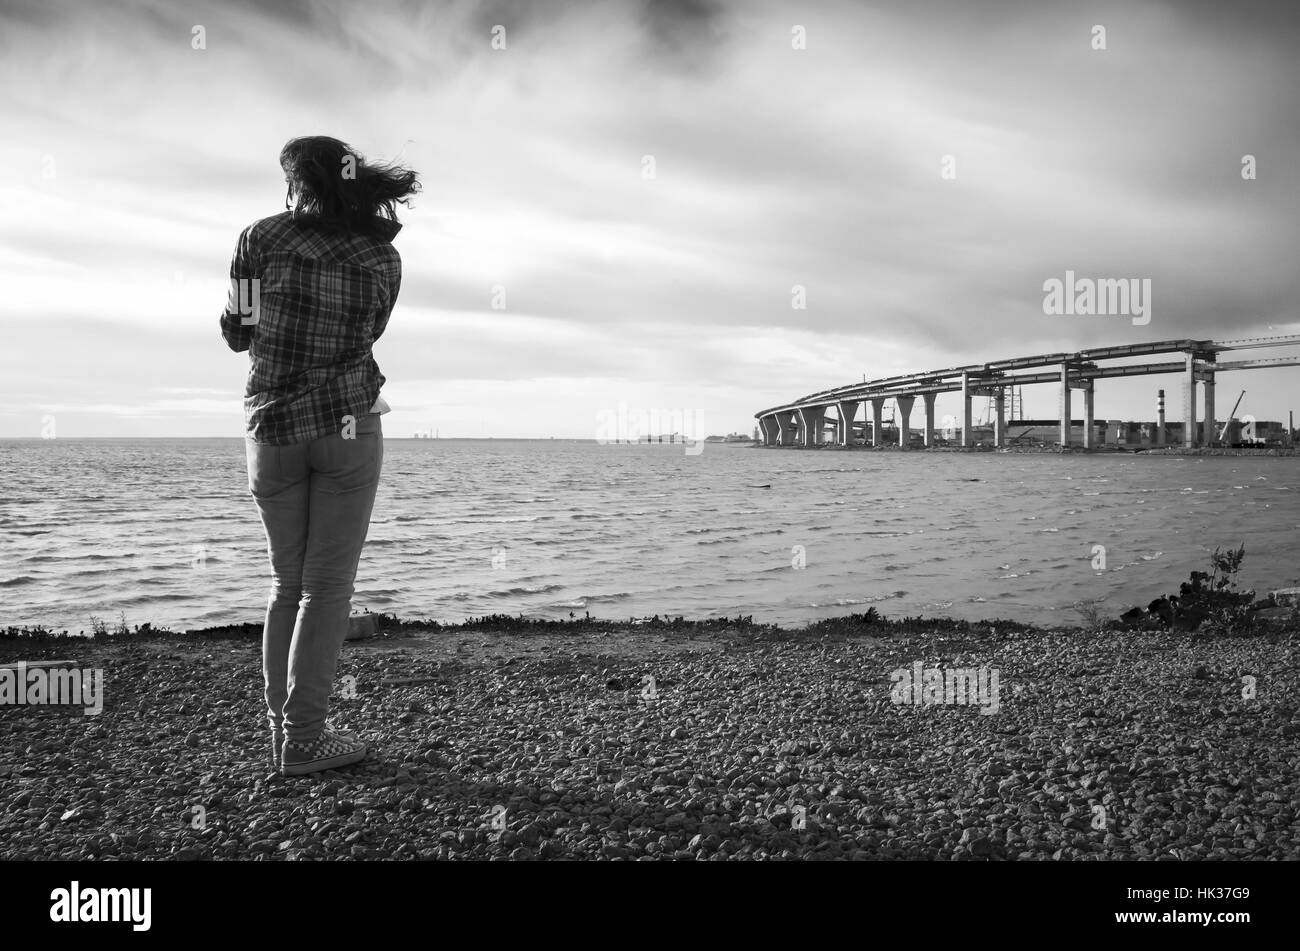 Jeune fille se tient sur un littoral, pont moderne en construction sur un horizon, photo en noir et blanc Banque D'Images